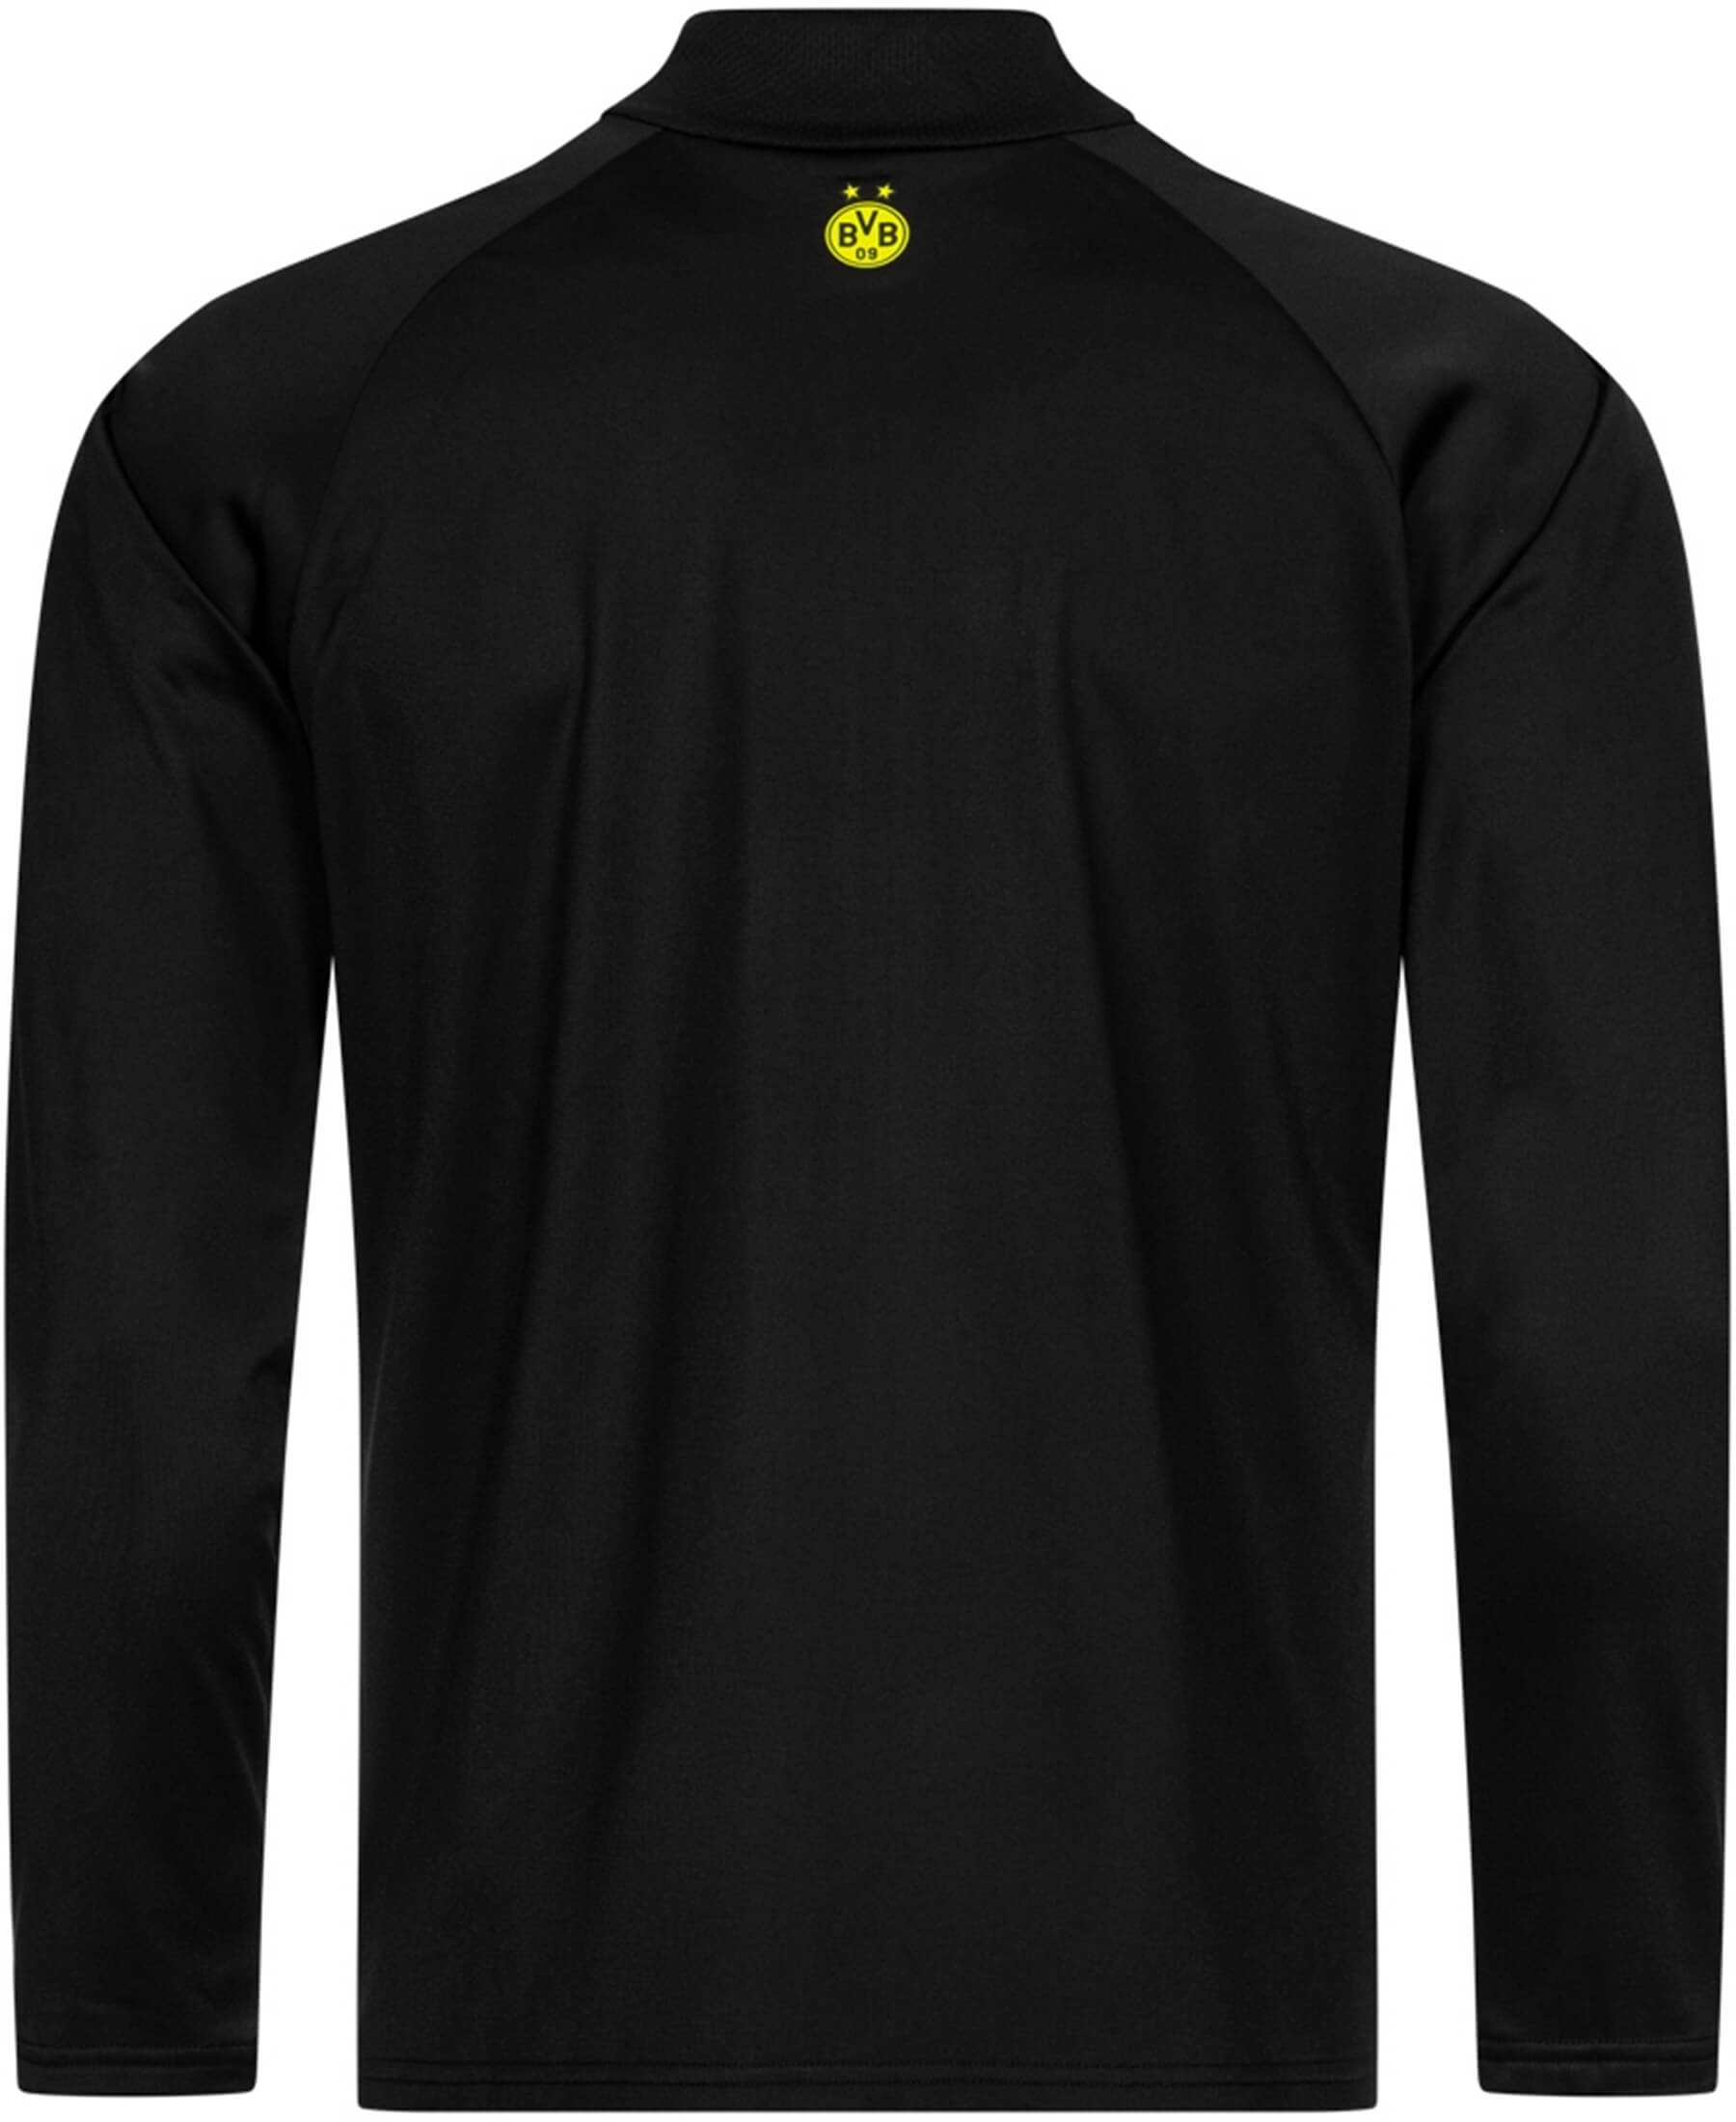 Puma Borussia Dortmund BVB Trainingsjacke 2021/2022 (Artikelnummer: 759073-05) - Offizielle Trainingsjacke im BVB-Design. Hochwertige Verarbeitung und optimale Bewegungsfreiheit. Unterstütze deinen Verein mit Stil. Jetzt bei SHOP4TEAMSPORT erhältlich. Zeige deine Fanliebe mit diesem exklusiven Fanartikel.